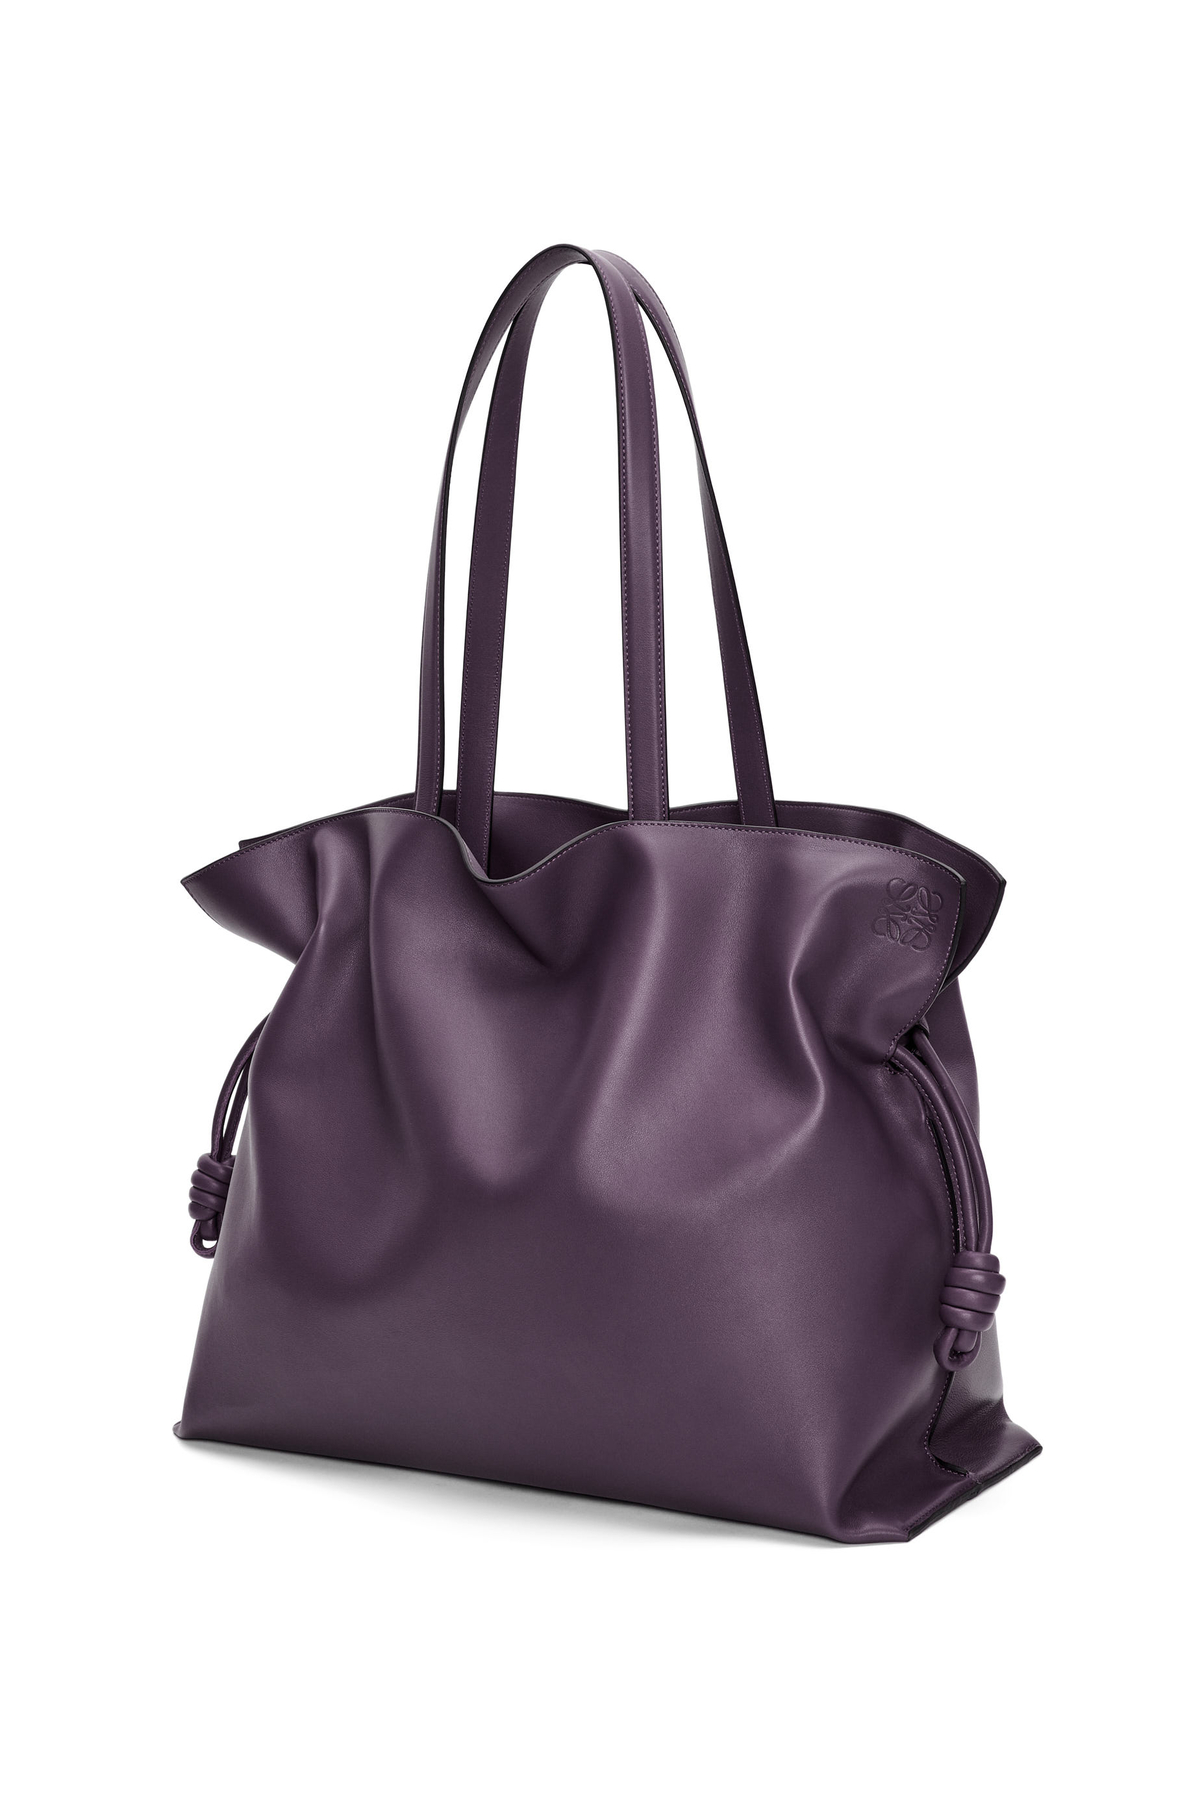 40代女性におすすめな人気の通勤バッグは、LOEWEのフラメンコクラッチ XL